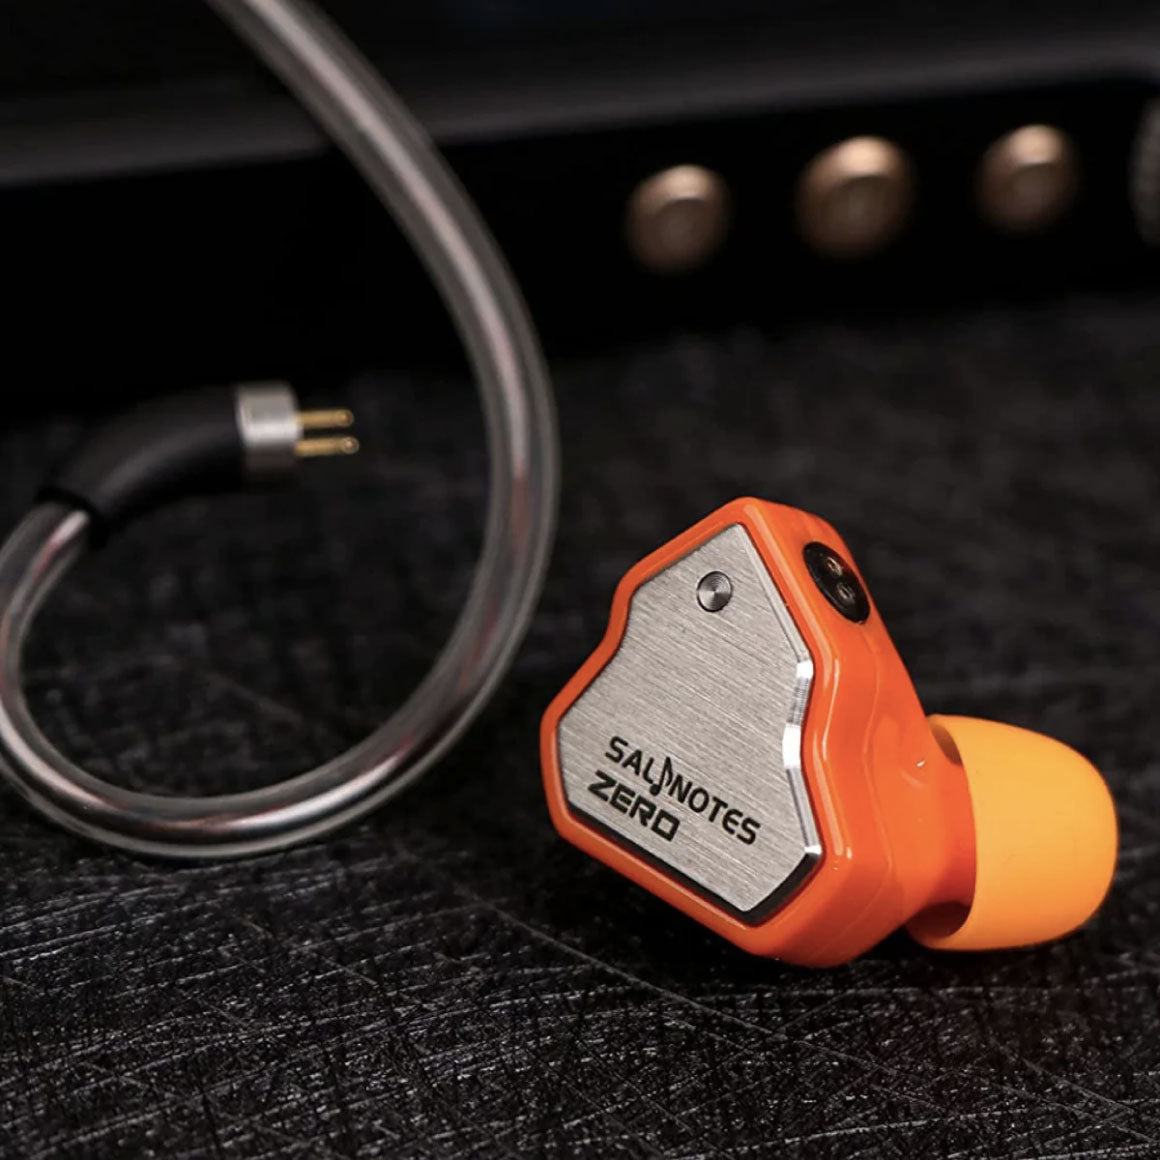 Headphone-Zone-7HZ-Salnotes Zero-Orange-USB-C-With Mic